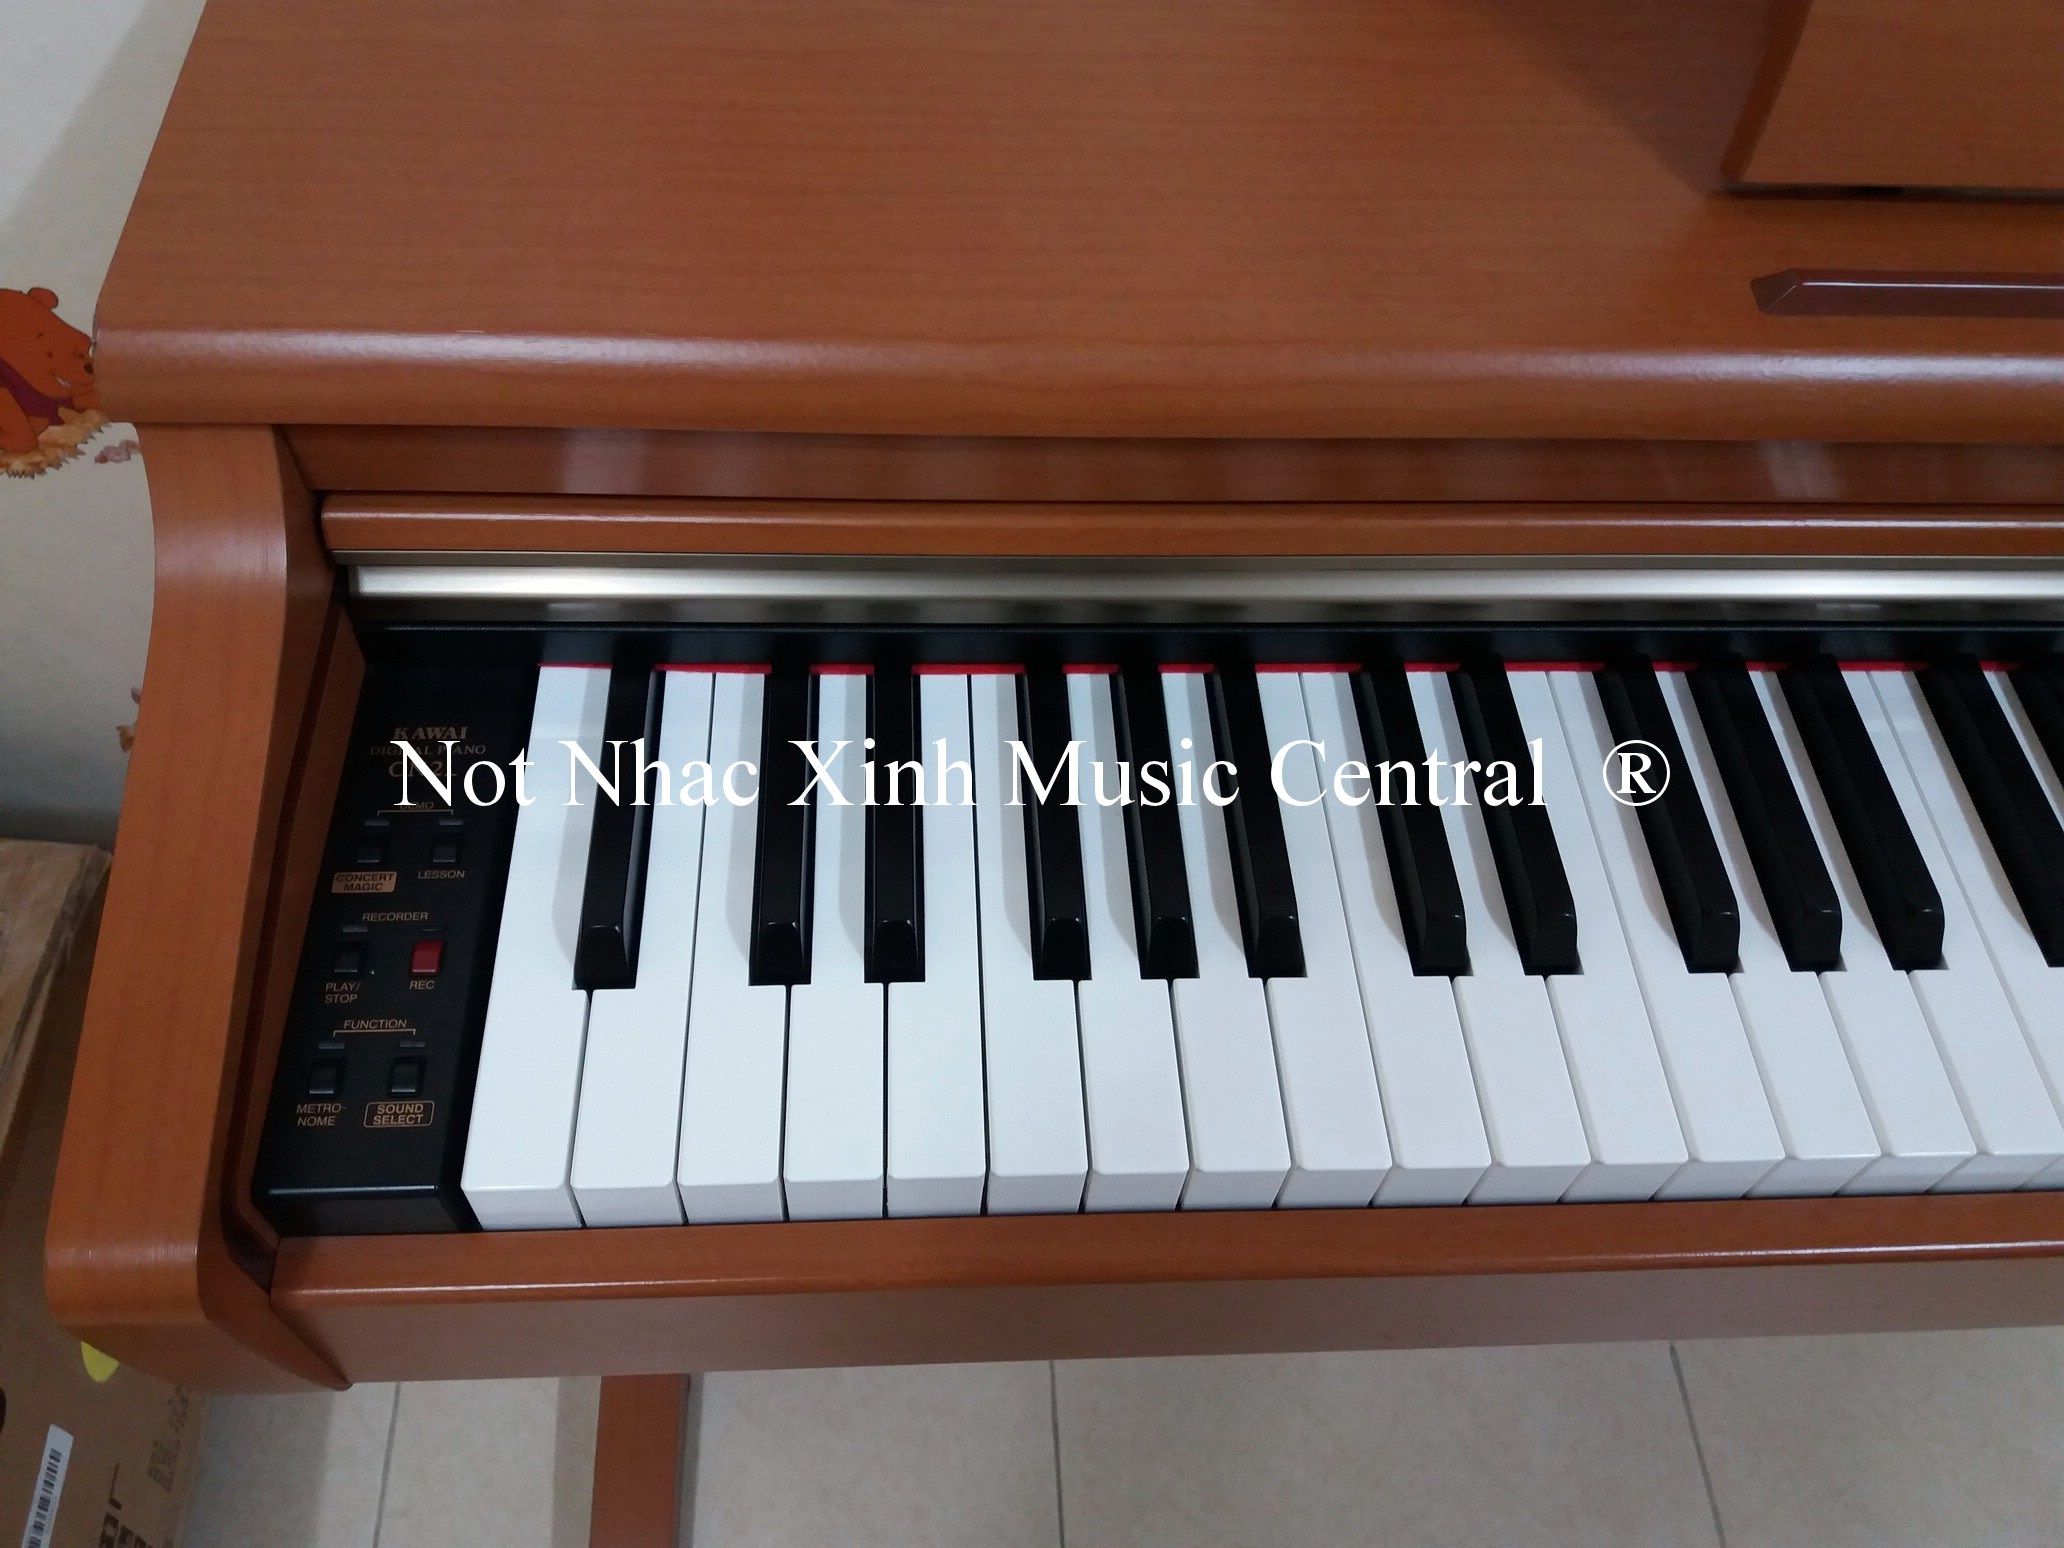 Đàn piano điện tử Kawai CN-21